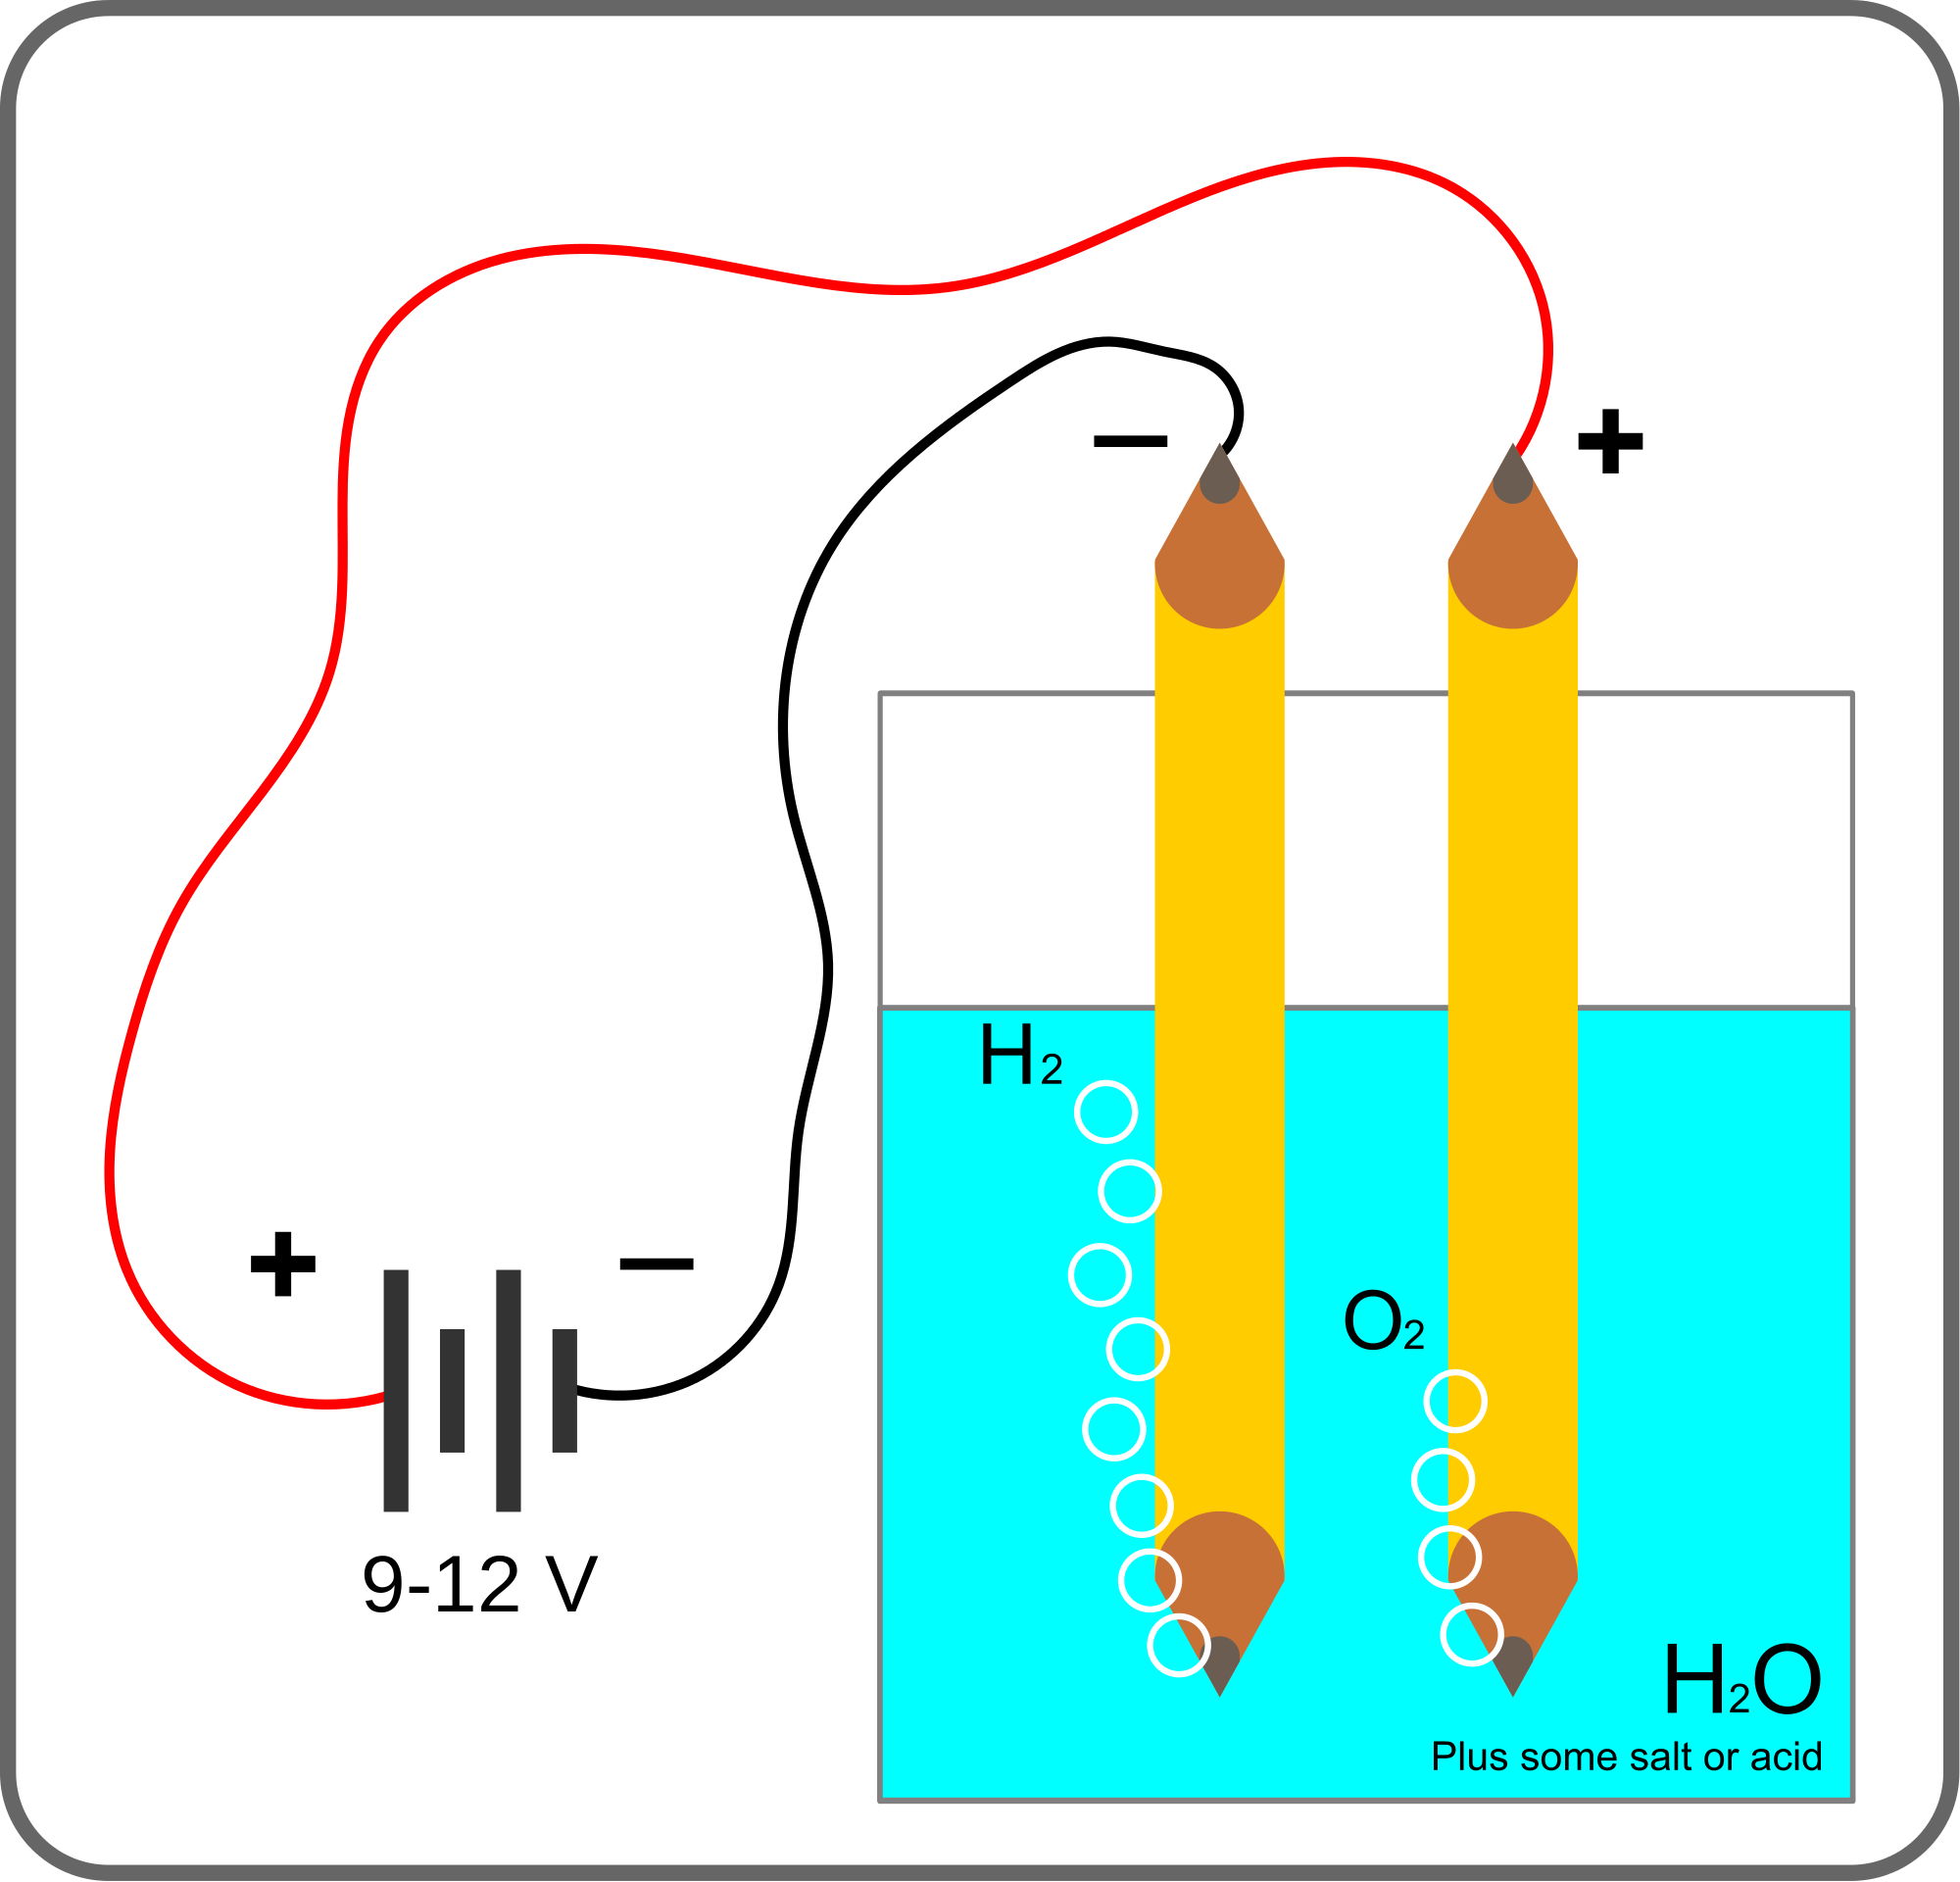 Figure 3: General block diagram of electrolysis